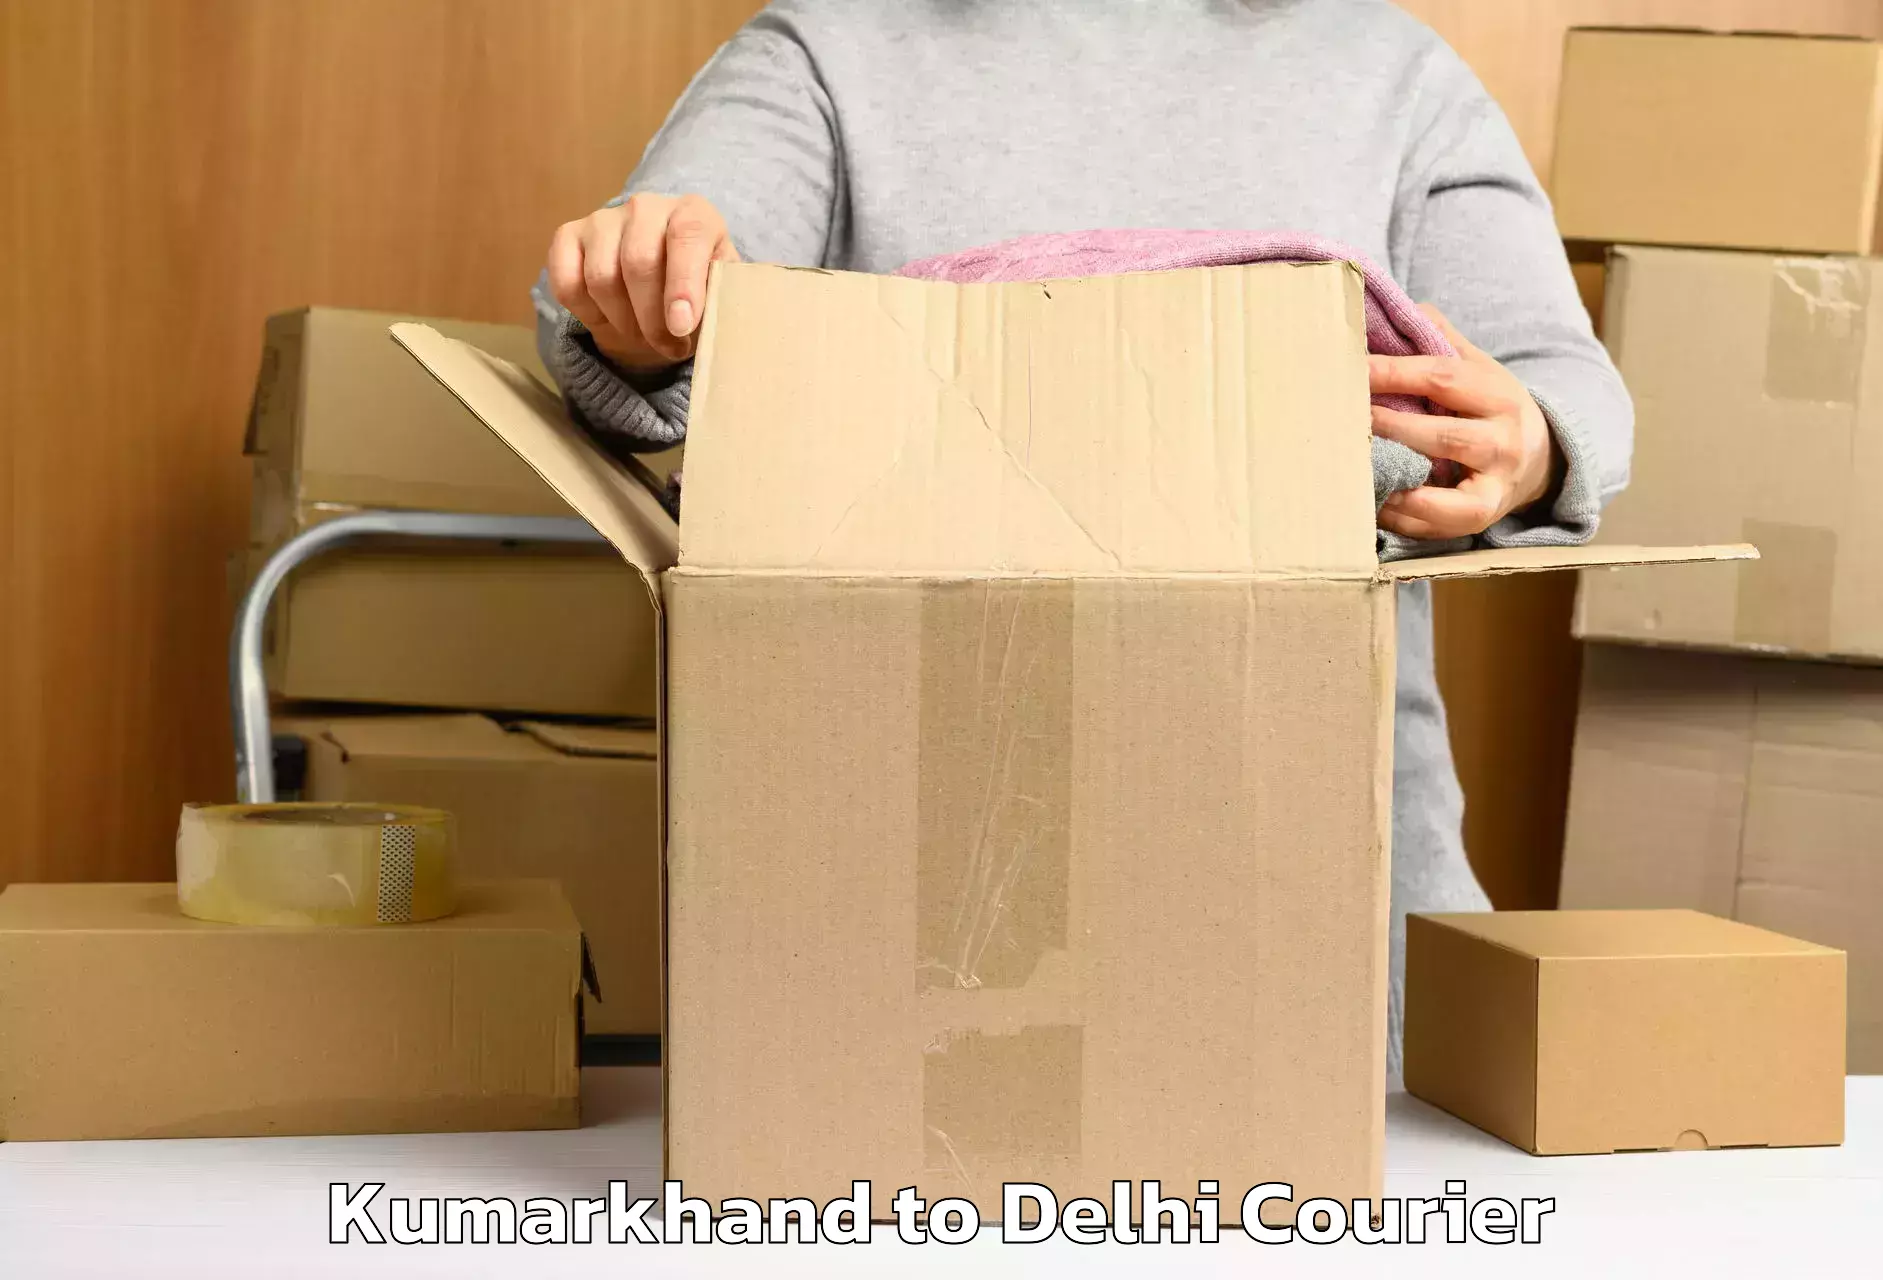 Luggage shipping efficiency Kumarkhand to Jamia Millia Islamia New Delhi